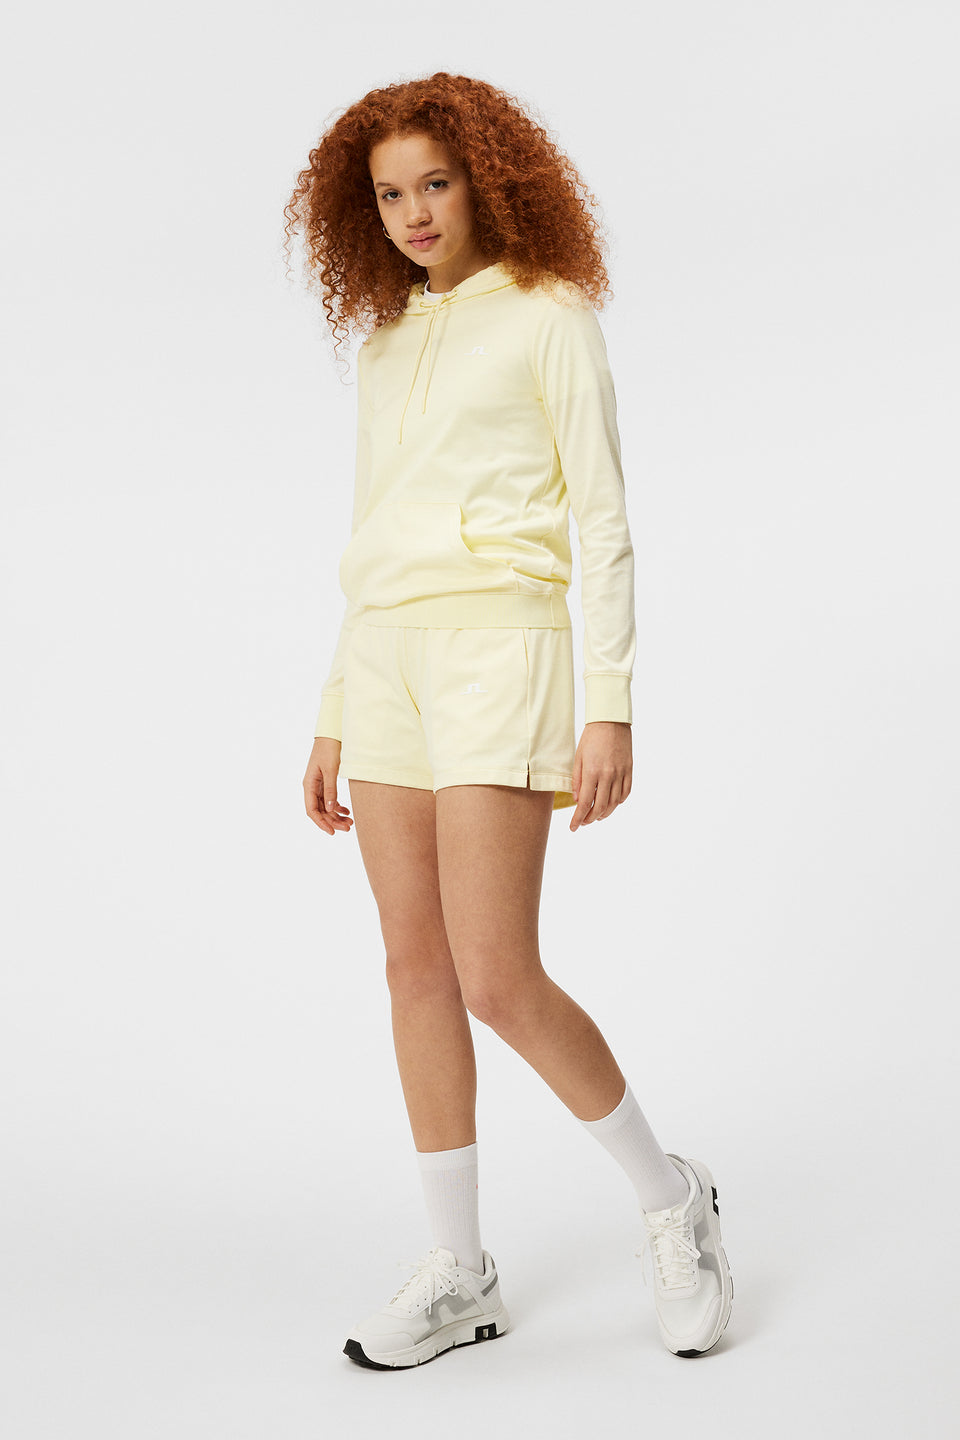 Vice Shorts / Wax Yellow